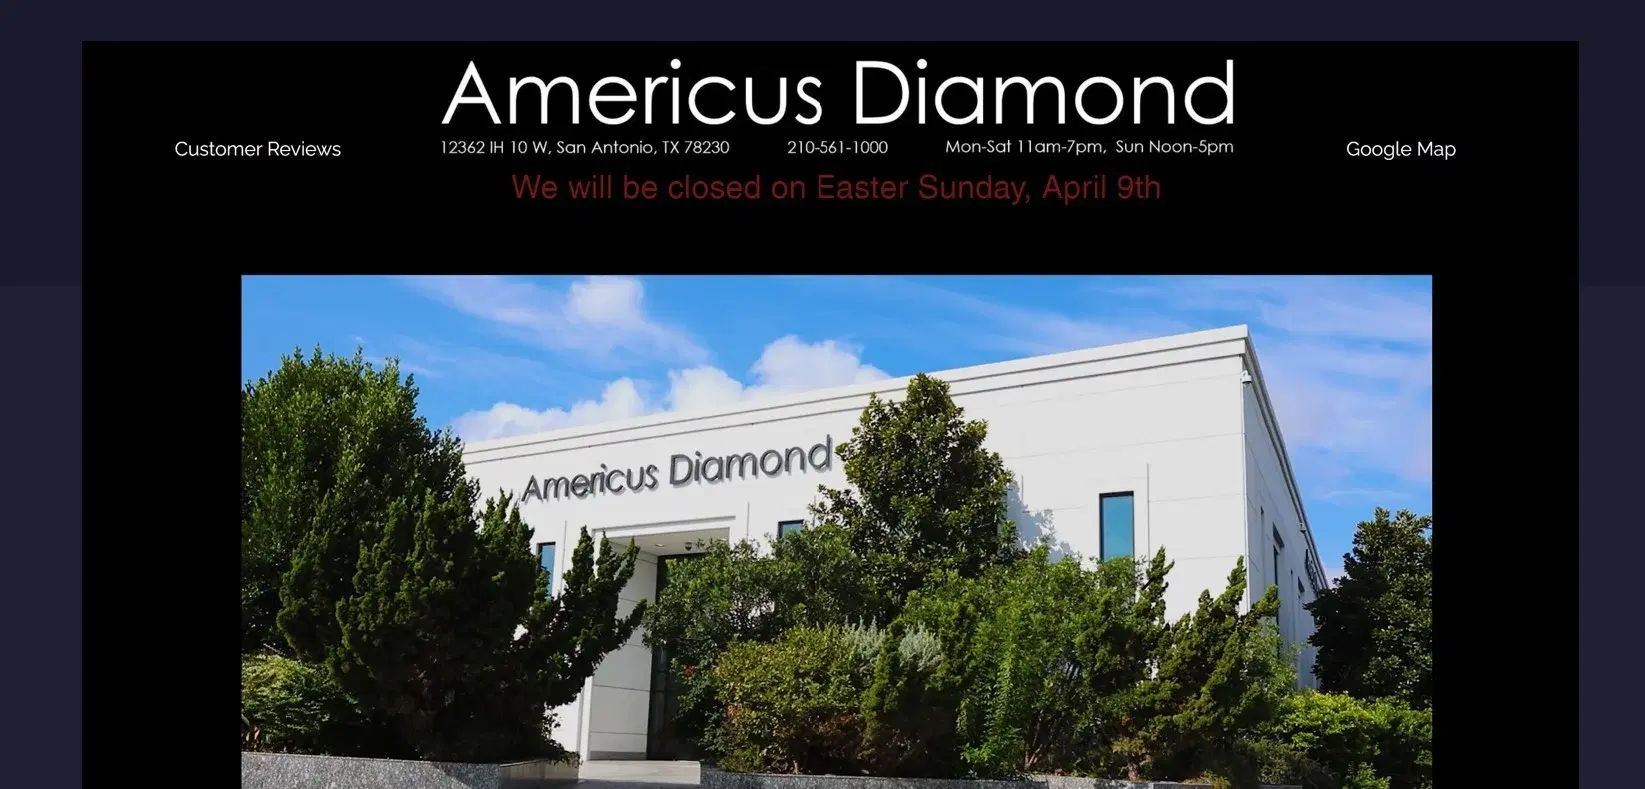 Americus Diamond Review: Are their prices good?